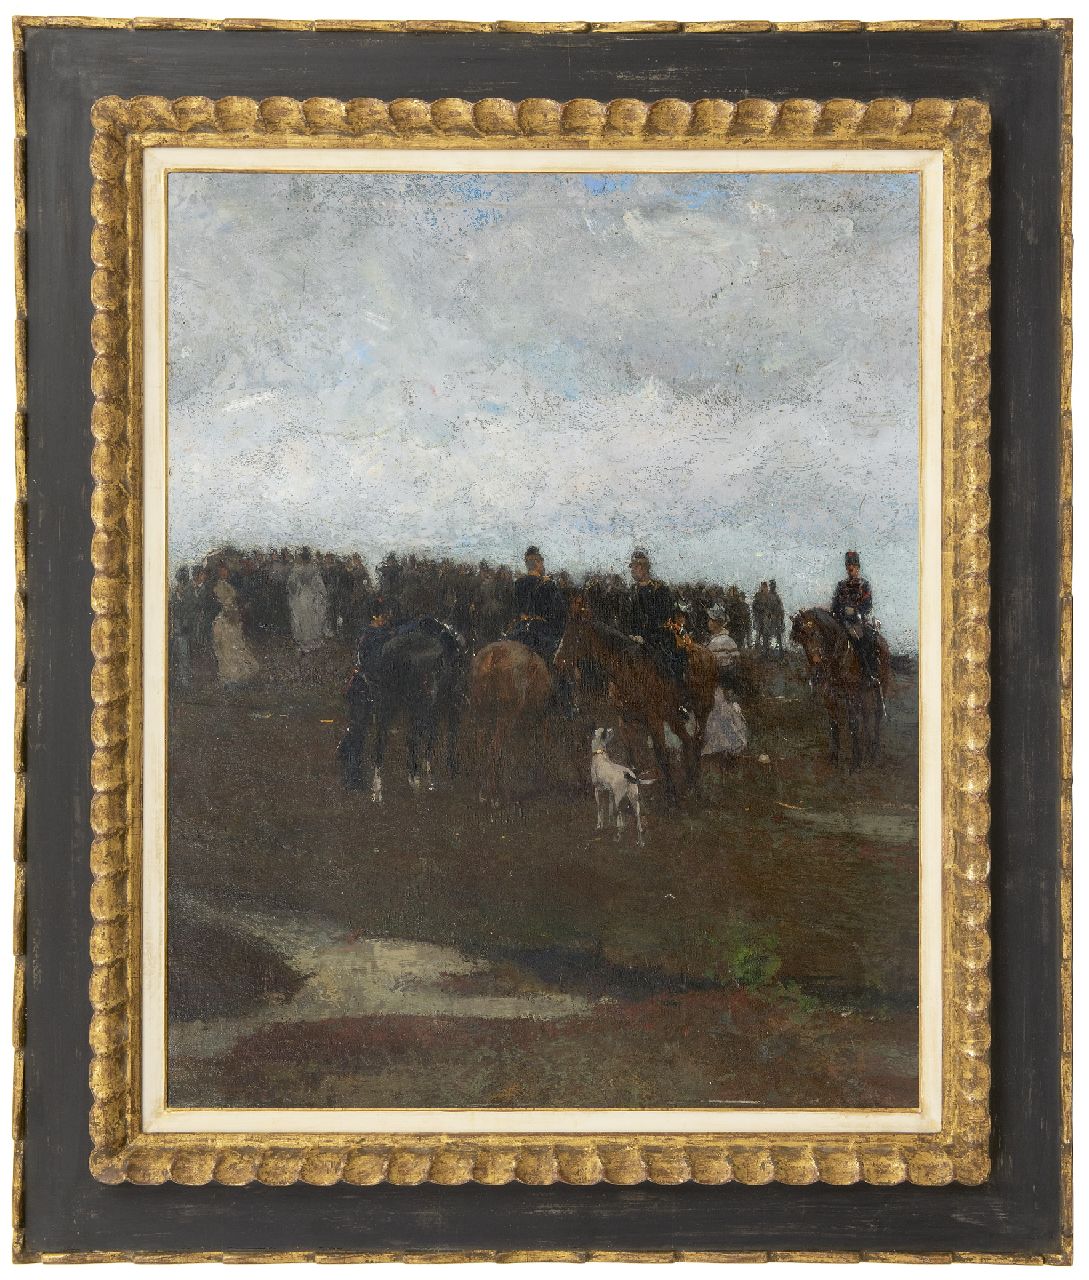 Waay N. van der | Nicolaas van der Waay, Cavalrymen and elegant women in a landscape, oil on canvas laid down on panel 70.5 x 58.0 cm, painted ca. 1905